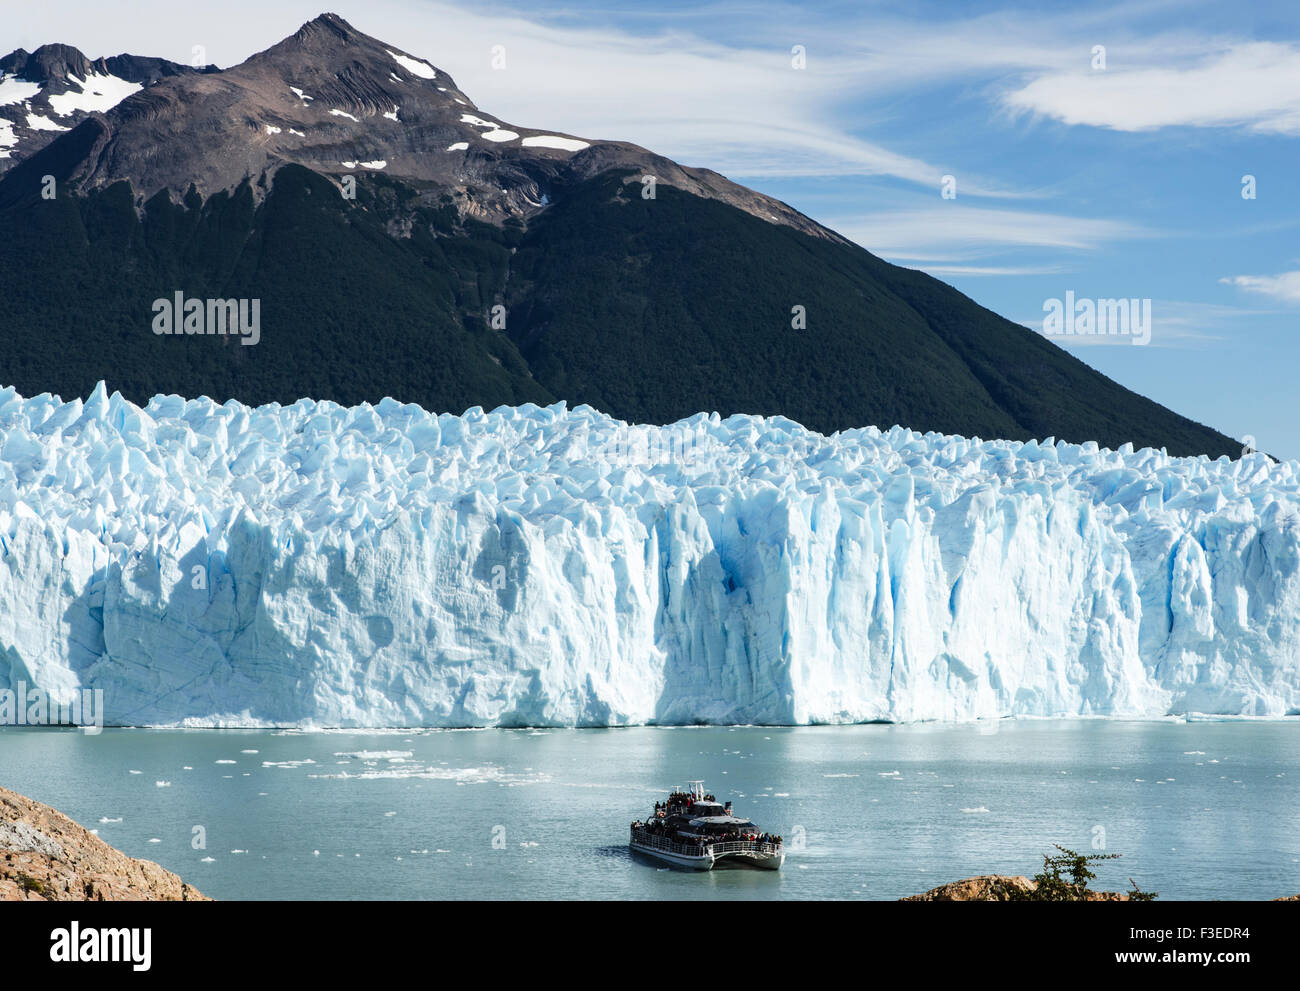 Tourist boat by Perito Moreno glacier, Perito Moreno National Park, Patagonia, Argentina, South America Stock Photo